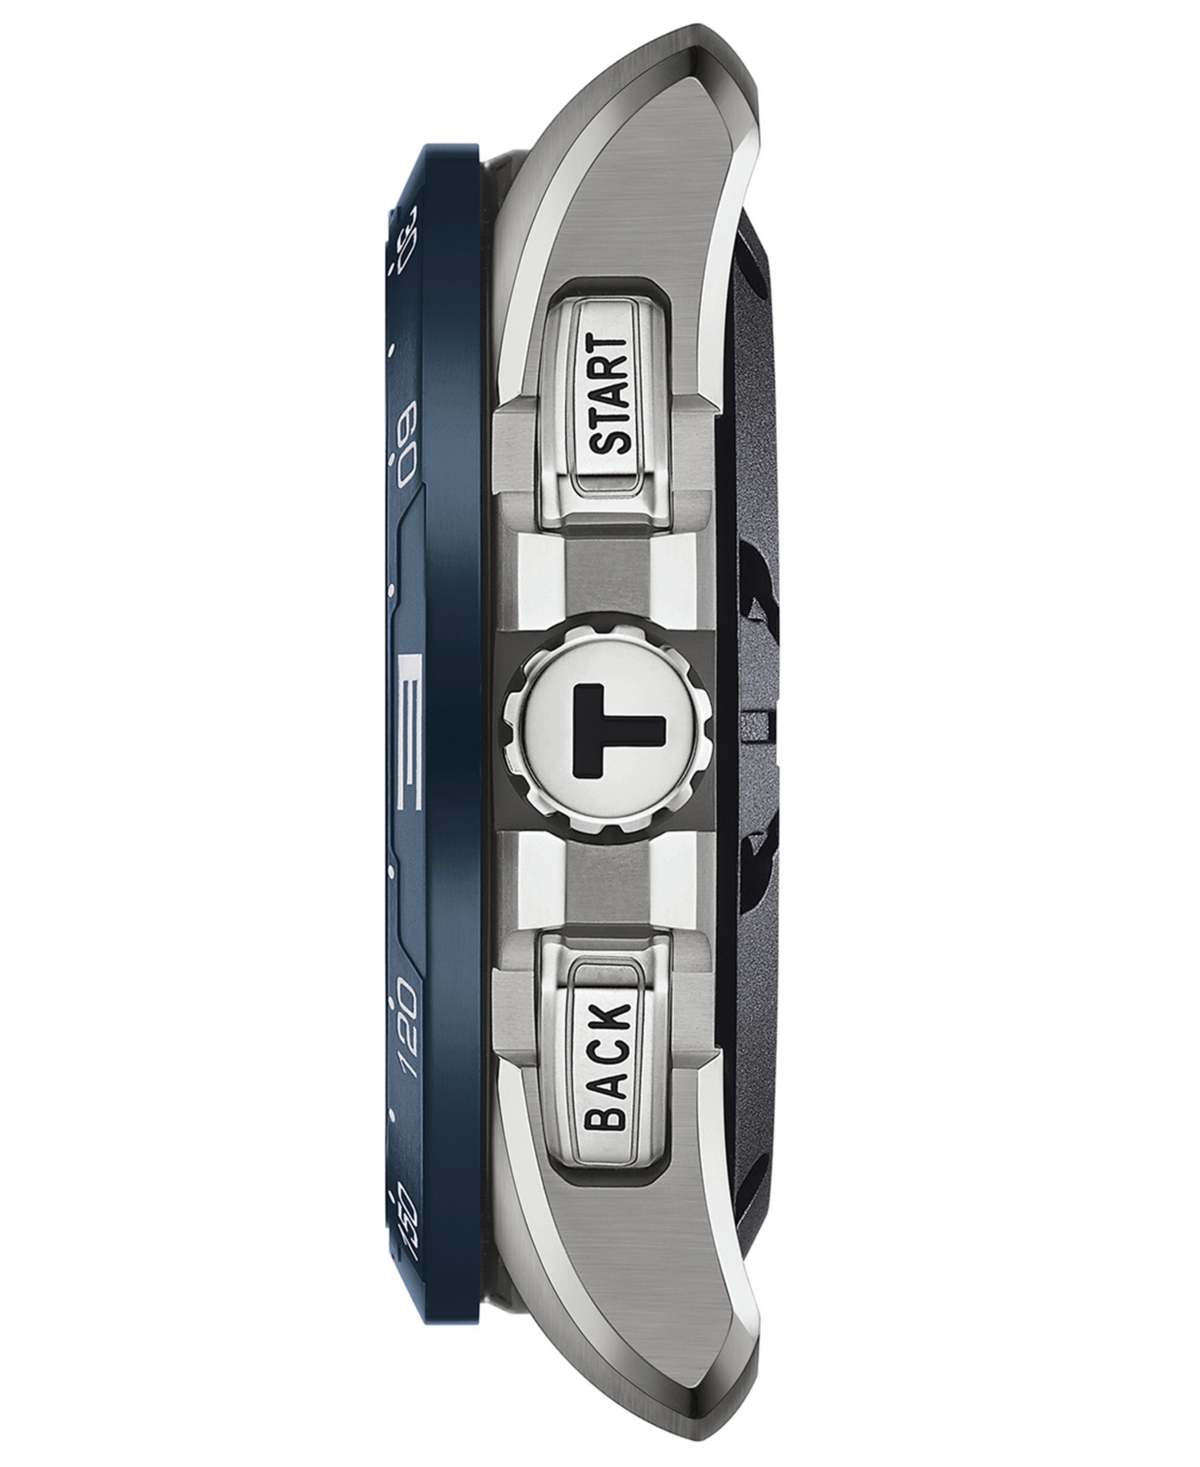 Shop Tissot Men's Swiss T-touch Connect Solar Blue Textile & Leather Strap Smart Watch 48mm